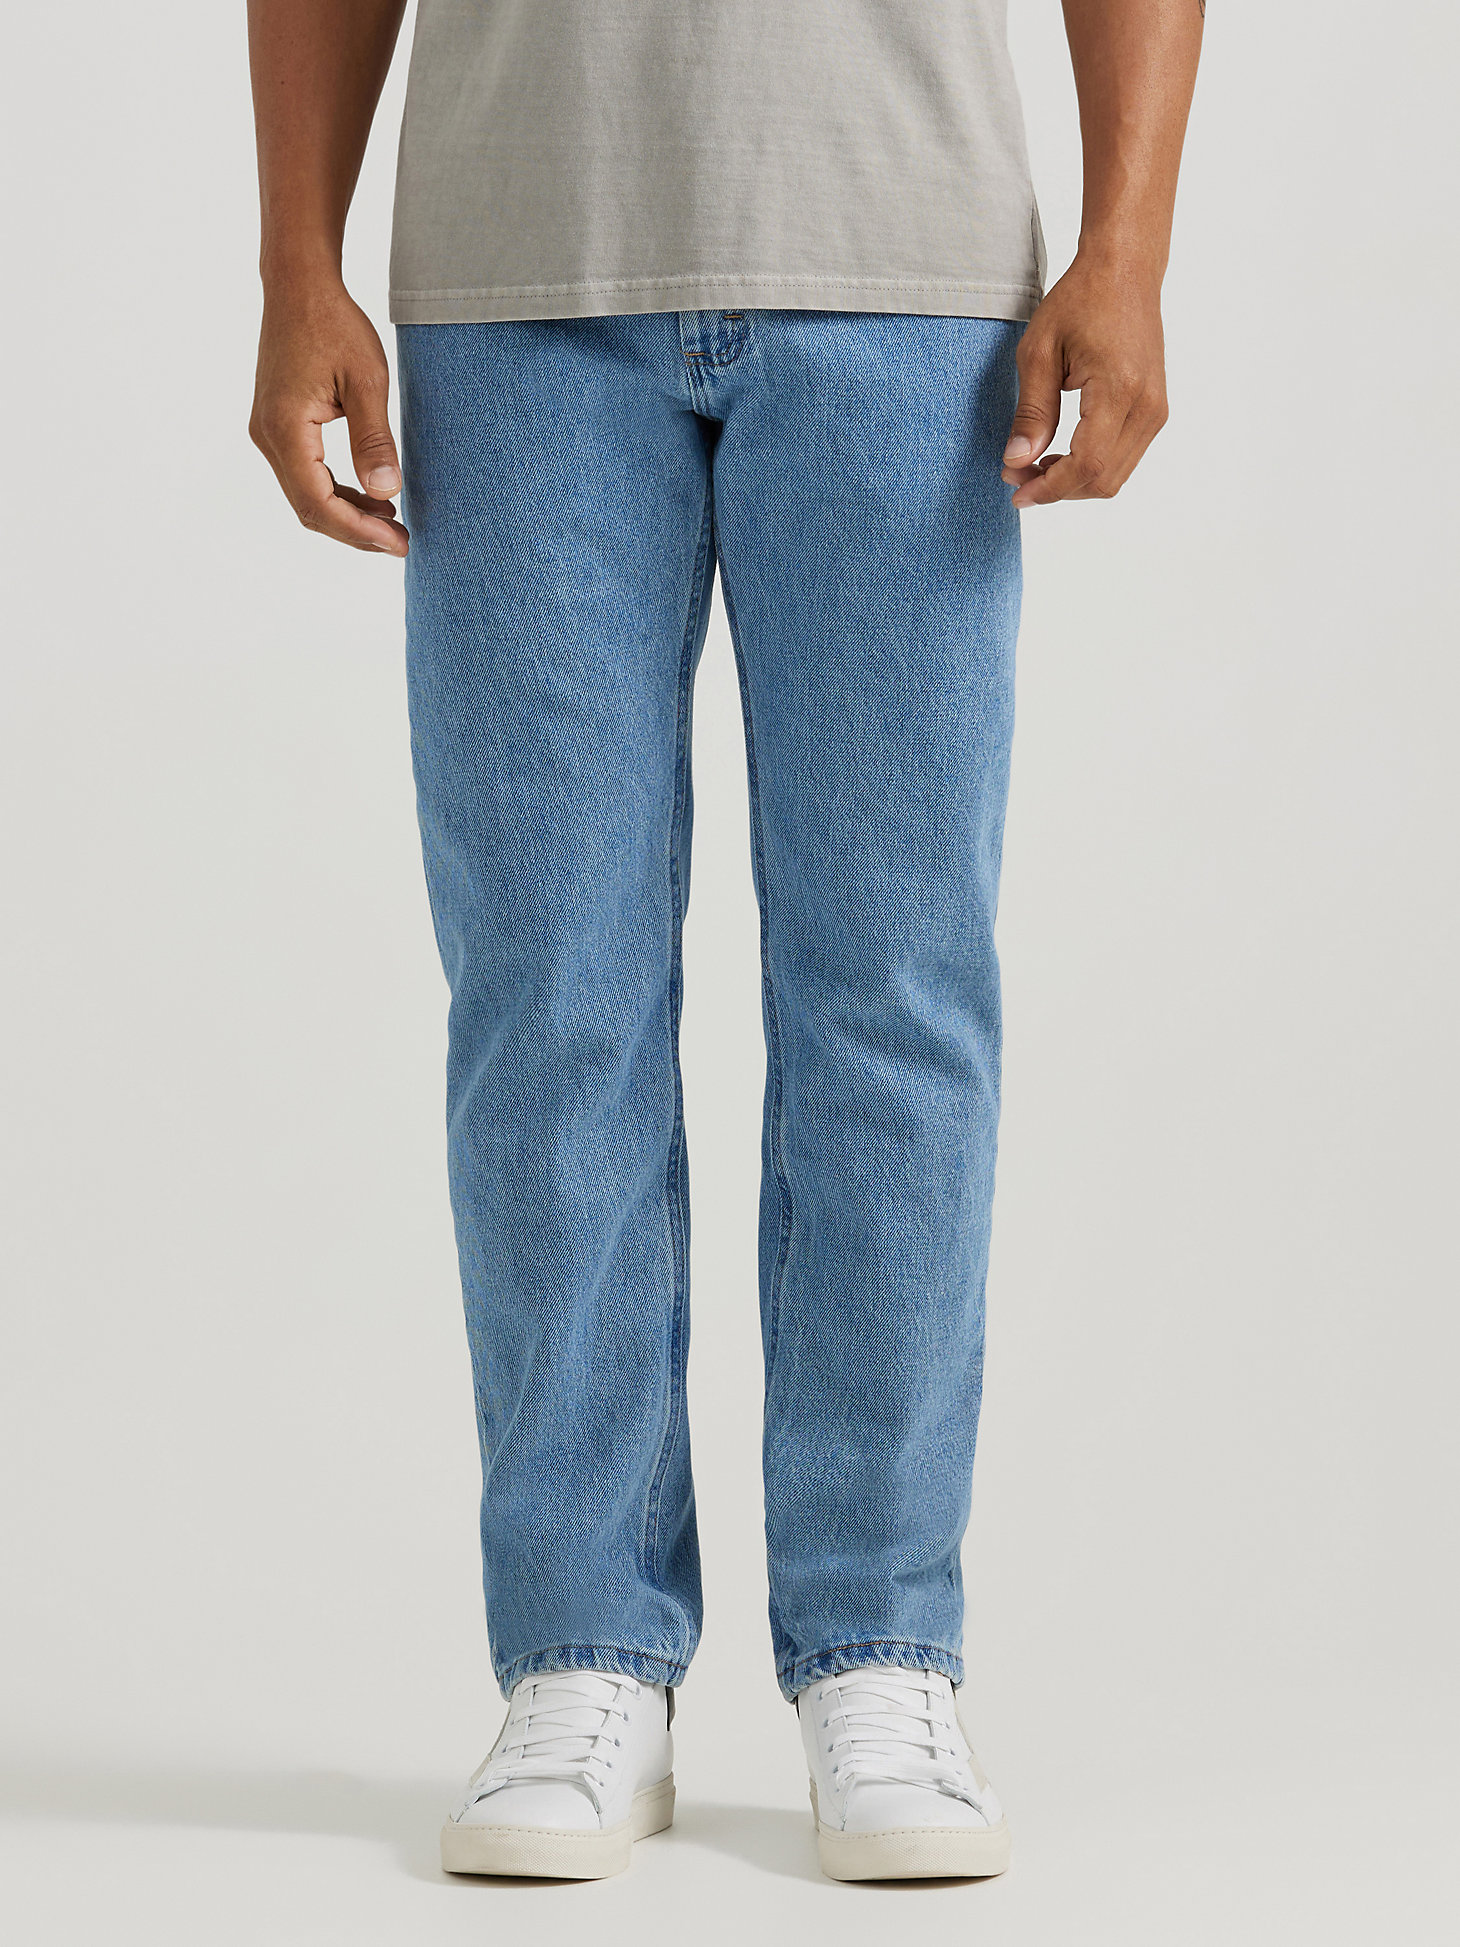 Arriba 79+ imagen wrangler 5 star jeans regular fit